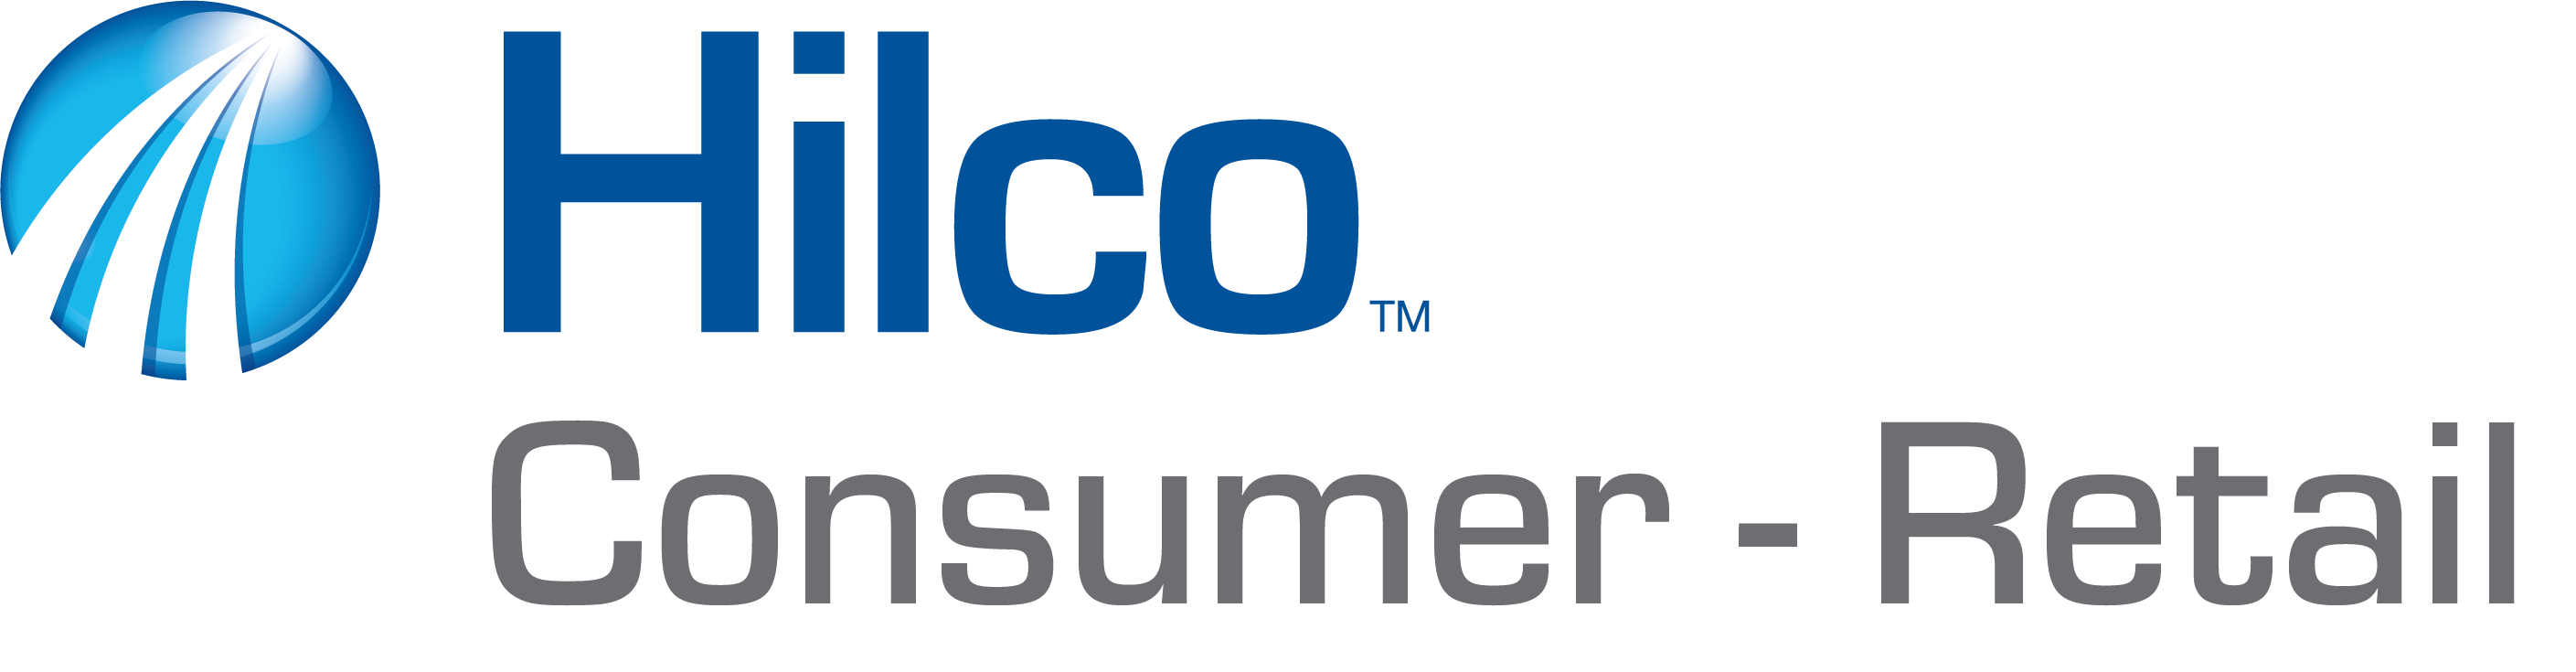 Hilco Consumer Retail 4C